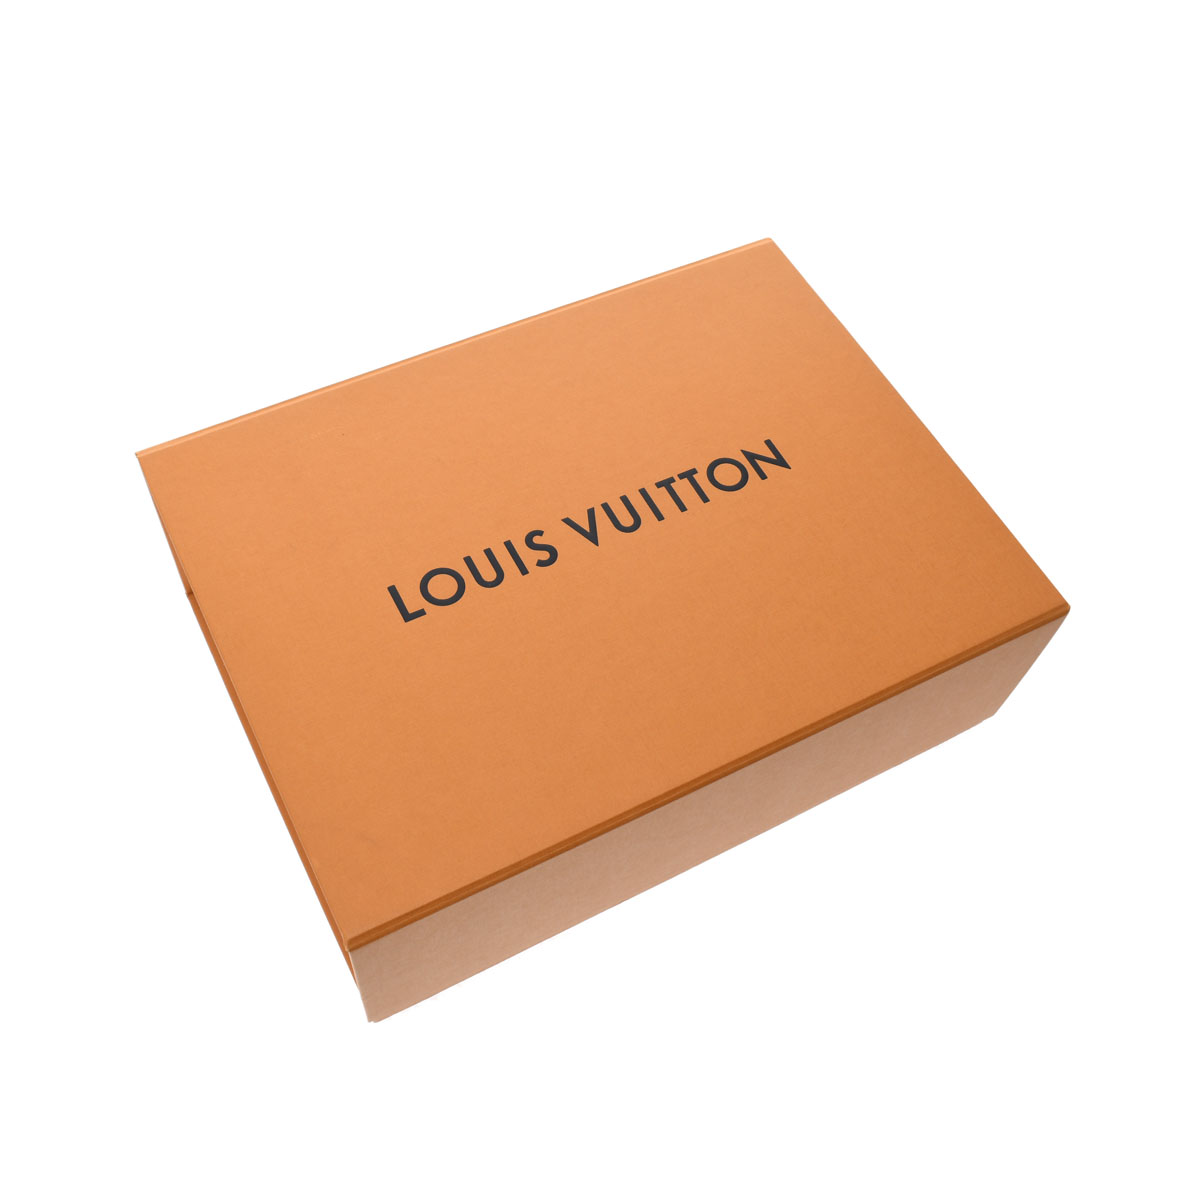 LOUIS VUITTON ルイヴィトン 靴下 雑貨 ショセット・セットアーカイブ ソックス MP3136 ゴールド 美品  54221